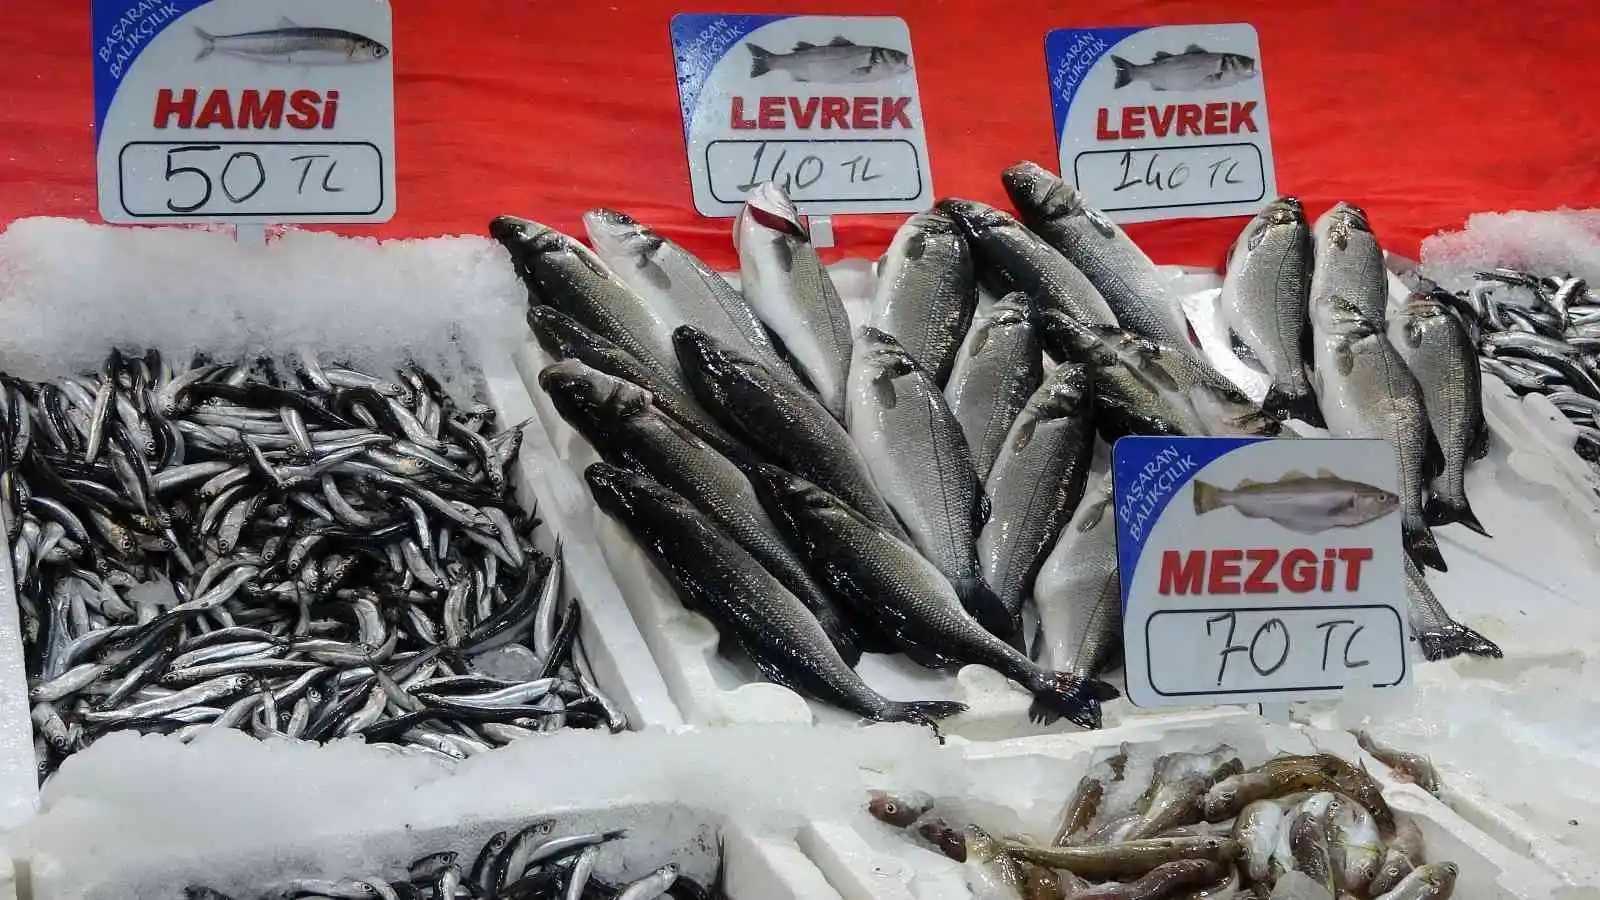 Olumsuz hava balıkçıları etkiledi: Avlanma azalınca fiyatlar arttı
